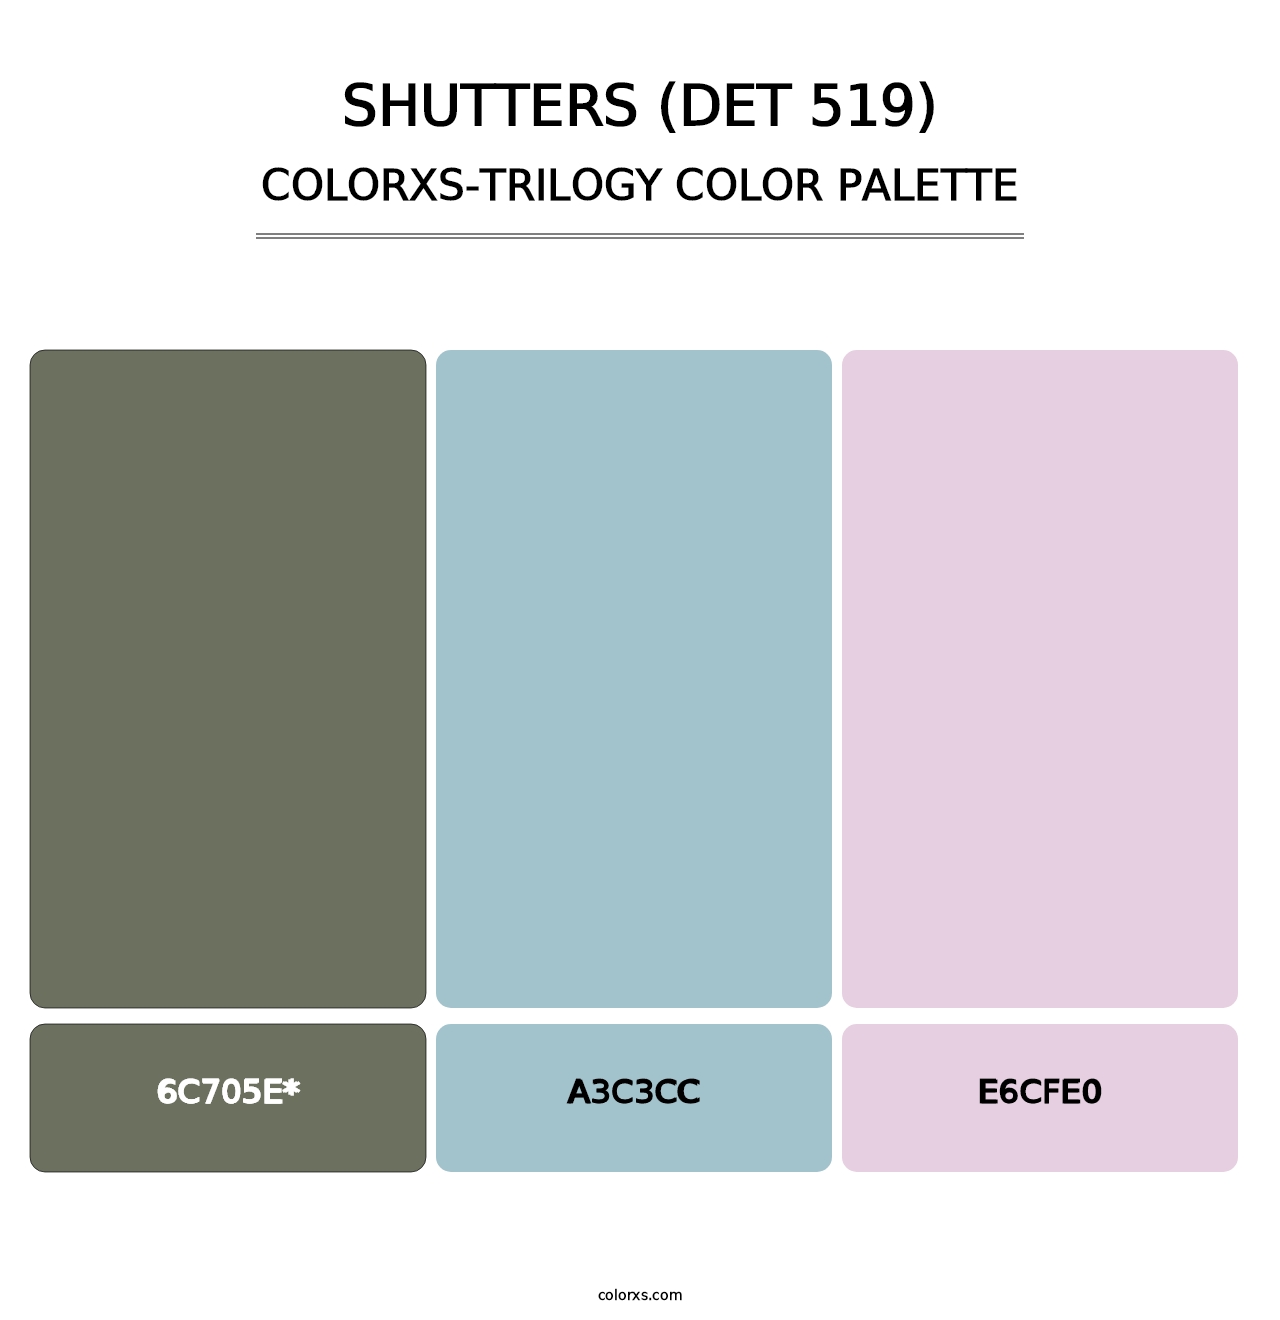 Shutters (DET 519) - Colorxs Trilogy Palette